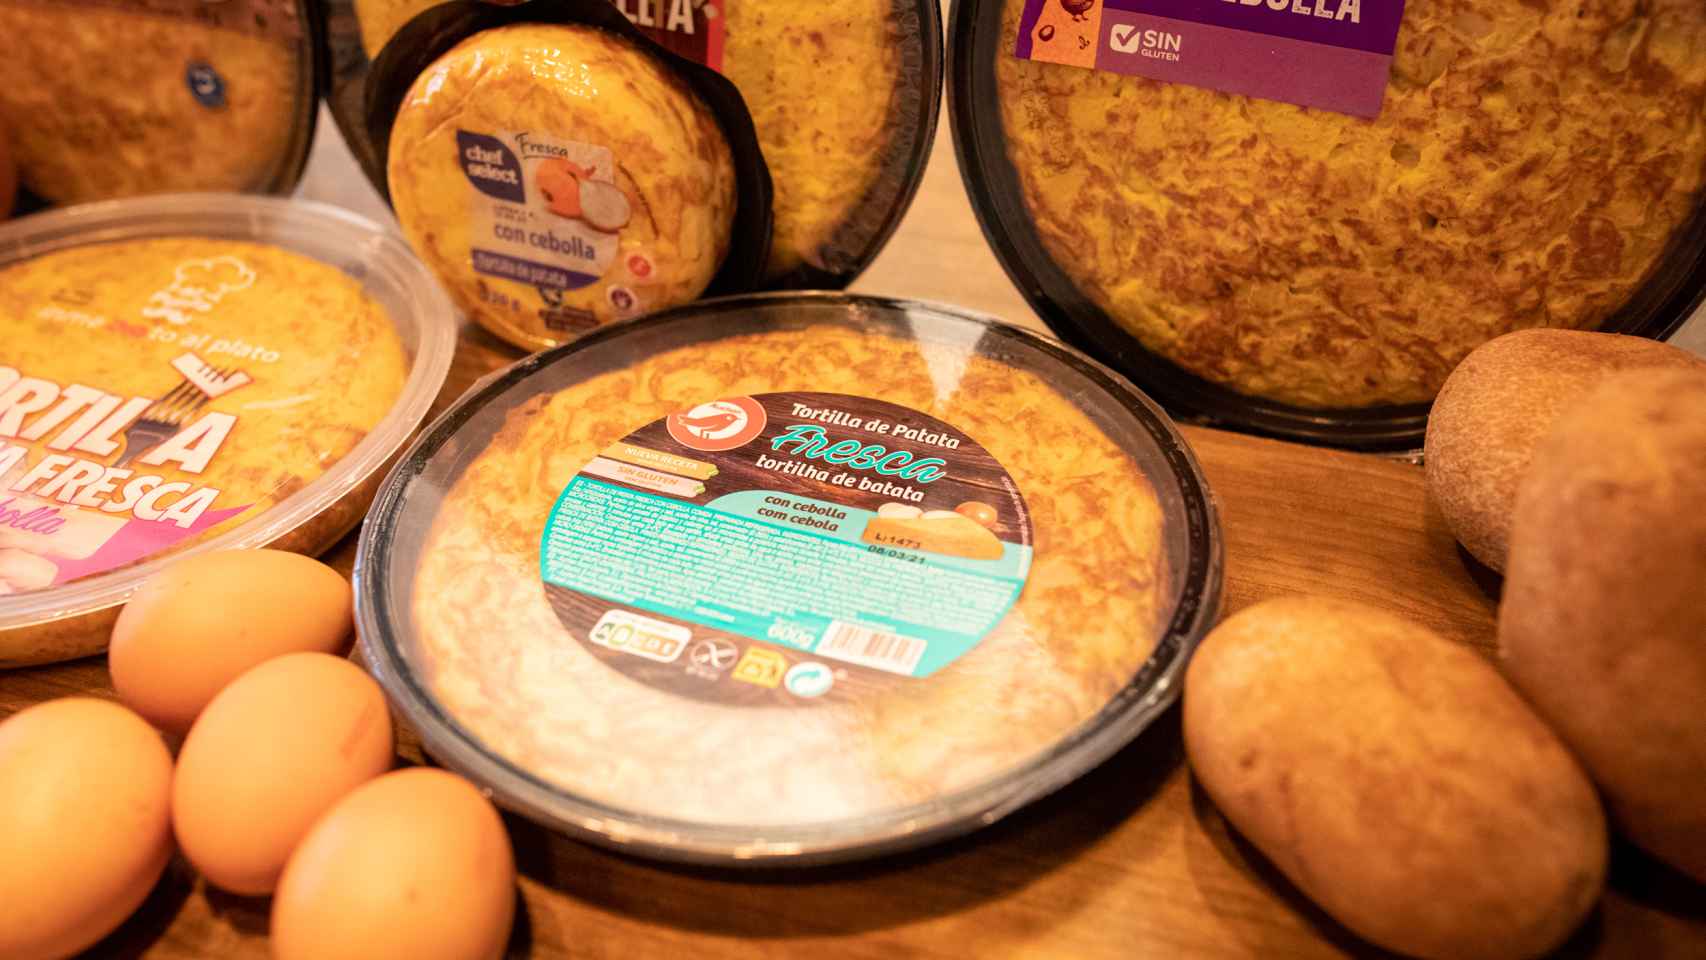 Las seis tortillas de patata con cebolla de los supermercados analizadas en la cata.